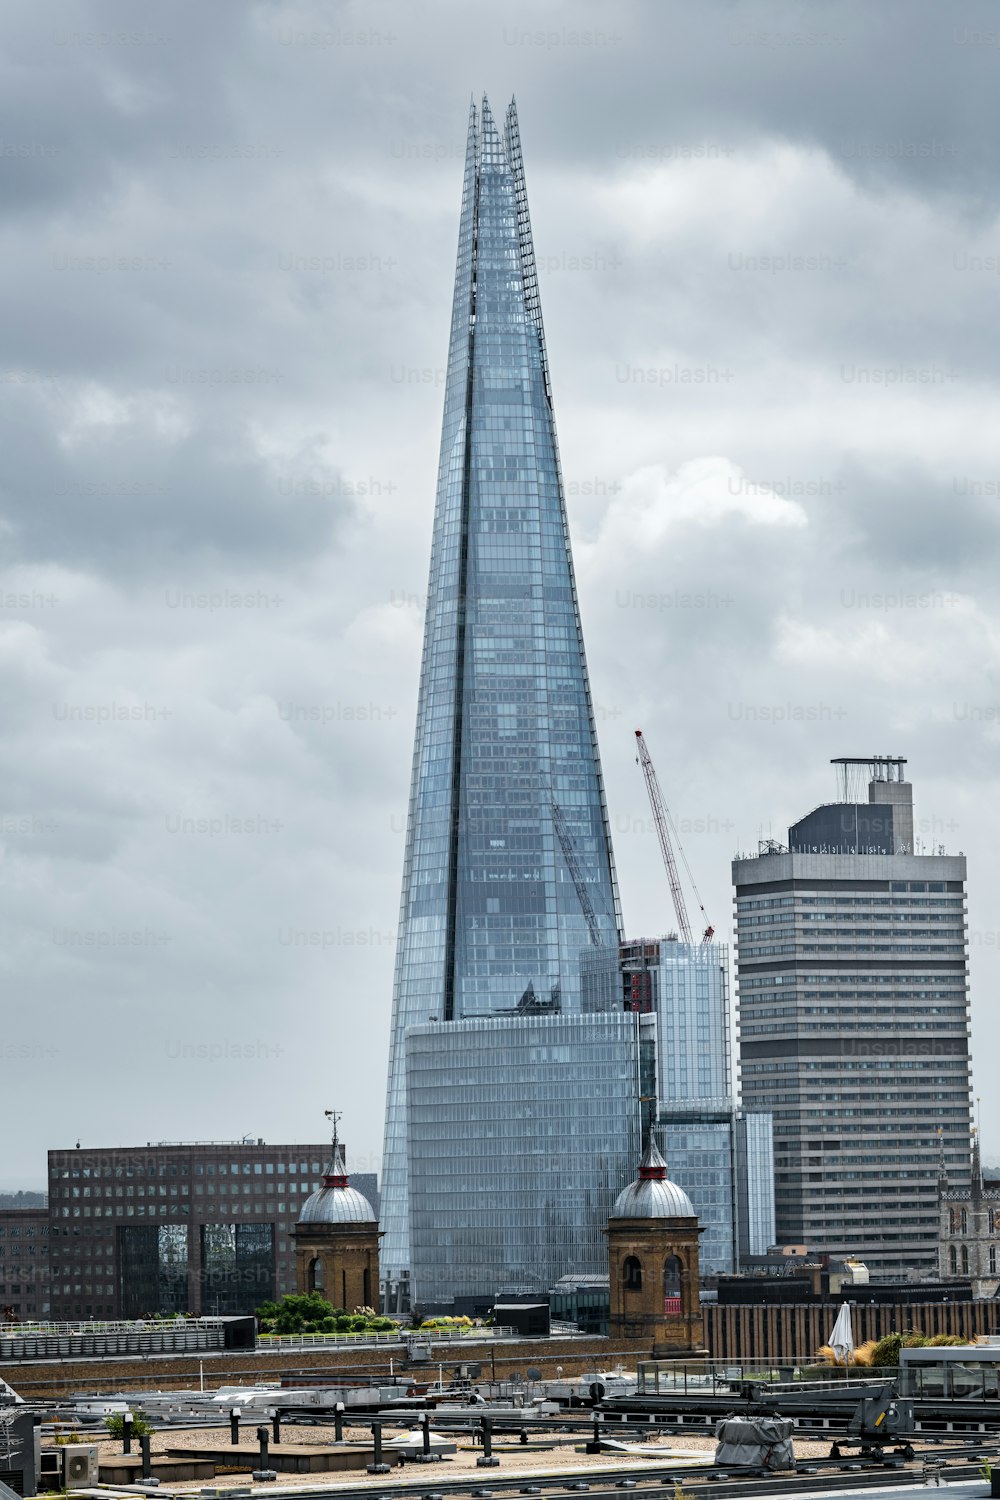 Paisagem urbana de Londres com o Shard ao fundo, o arranha-céu mais alto da Europa Ocidental.